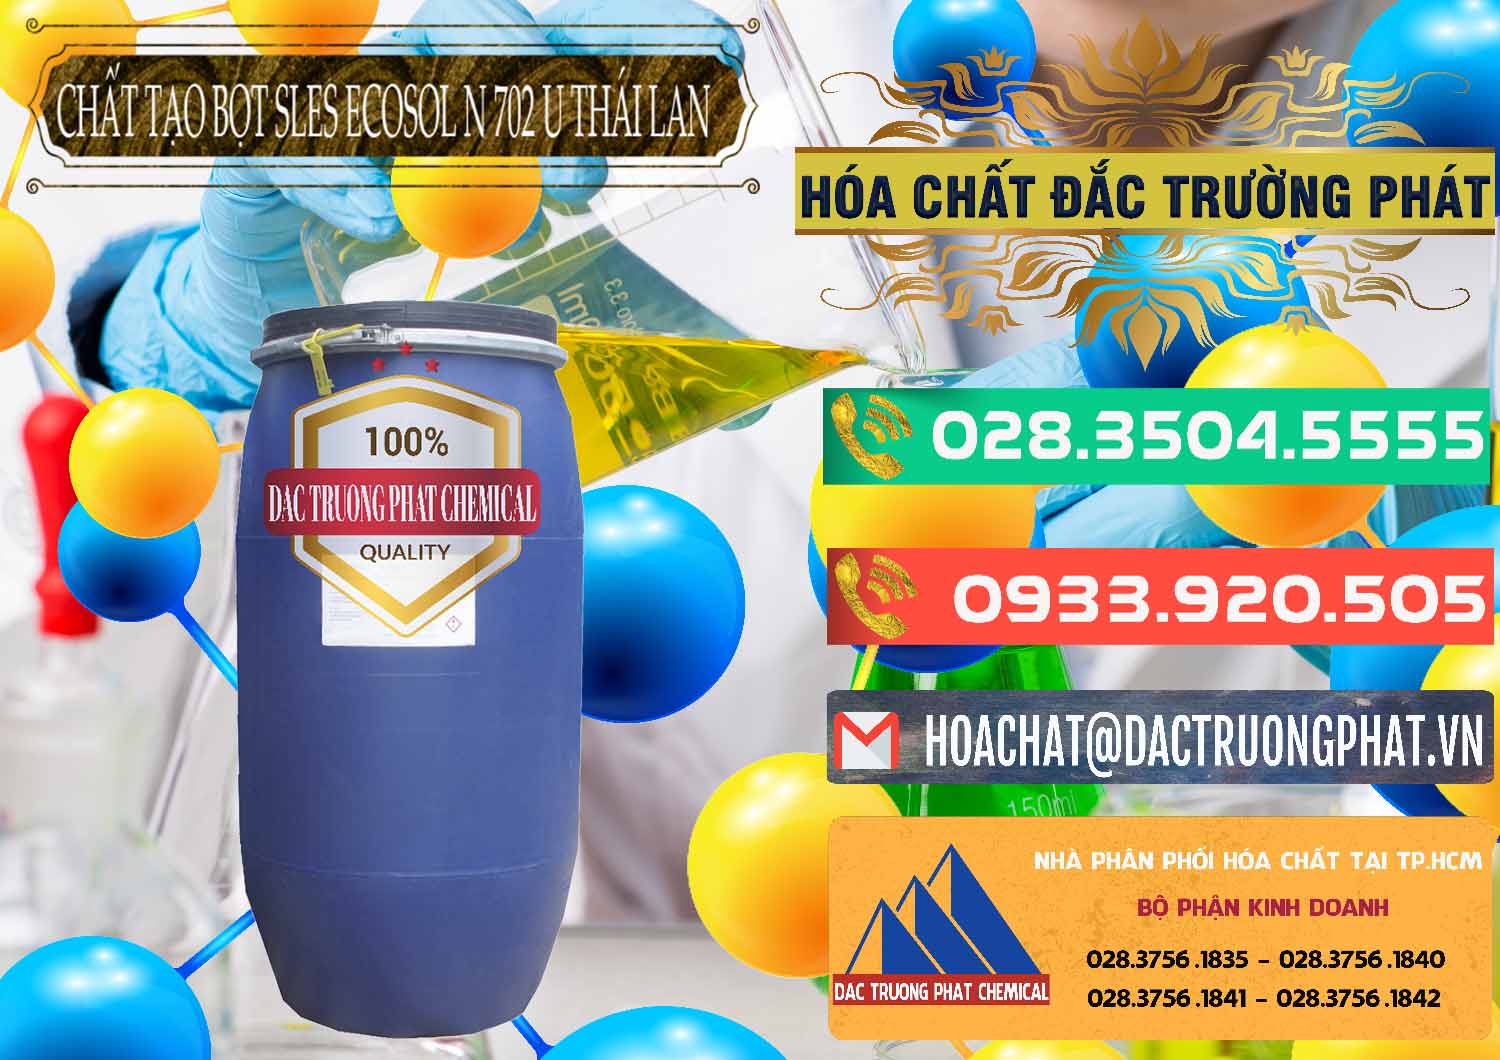 Cty chuyên bán và cung cấp Chất Tạo Bọt Sles - Sodium Lauryl Ether Sulphate Ecosol N 702 U Thái Lan - 0254 - Công ty chuyên cung cấp & nhập khẩu hóa chất tại TP.HCM - congtyhoachat.com.vn